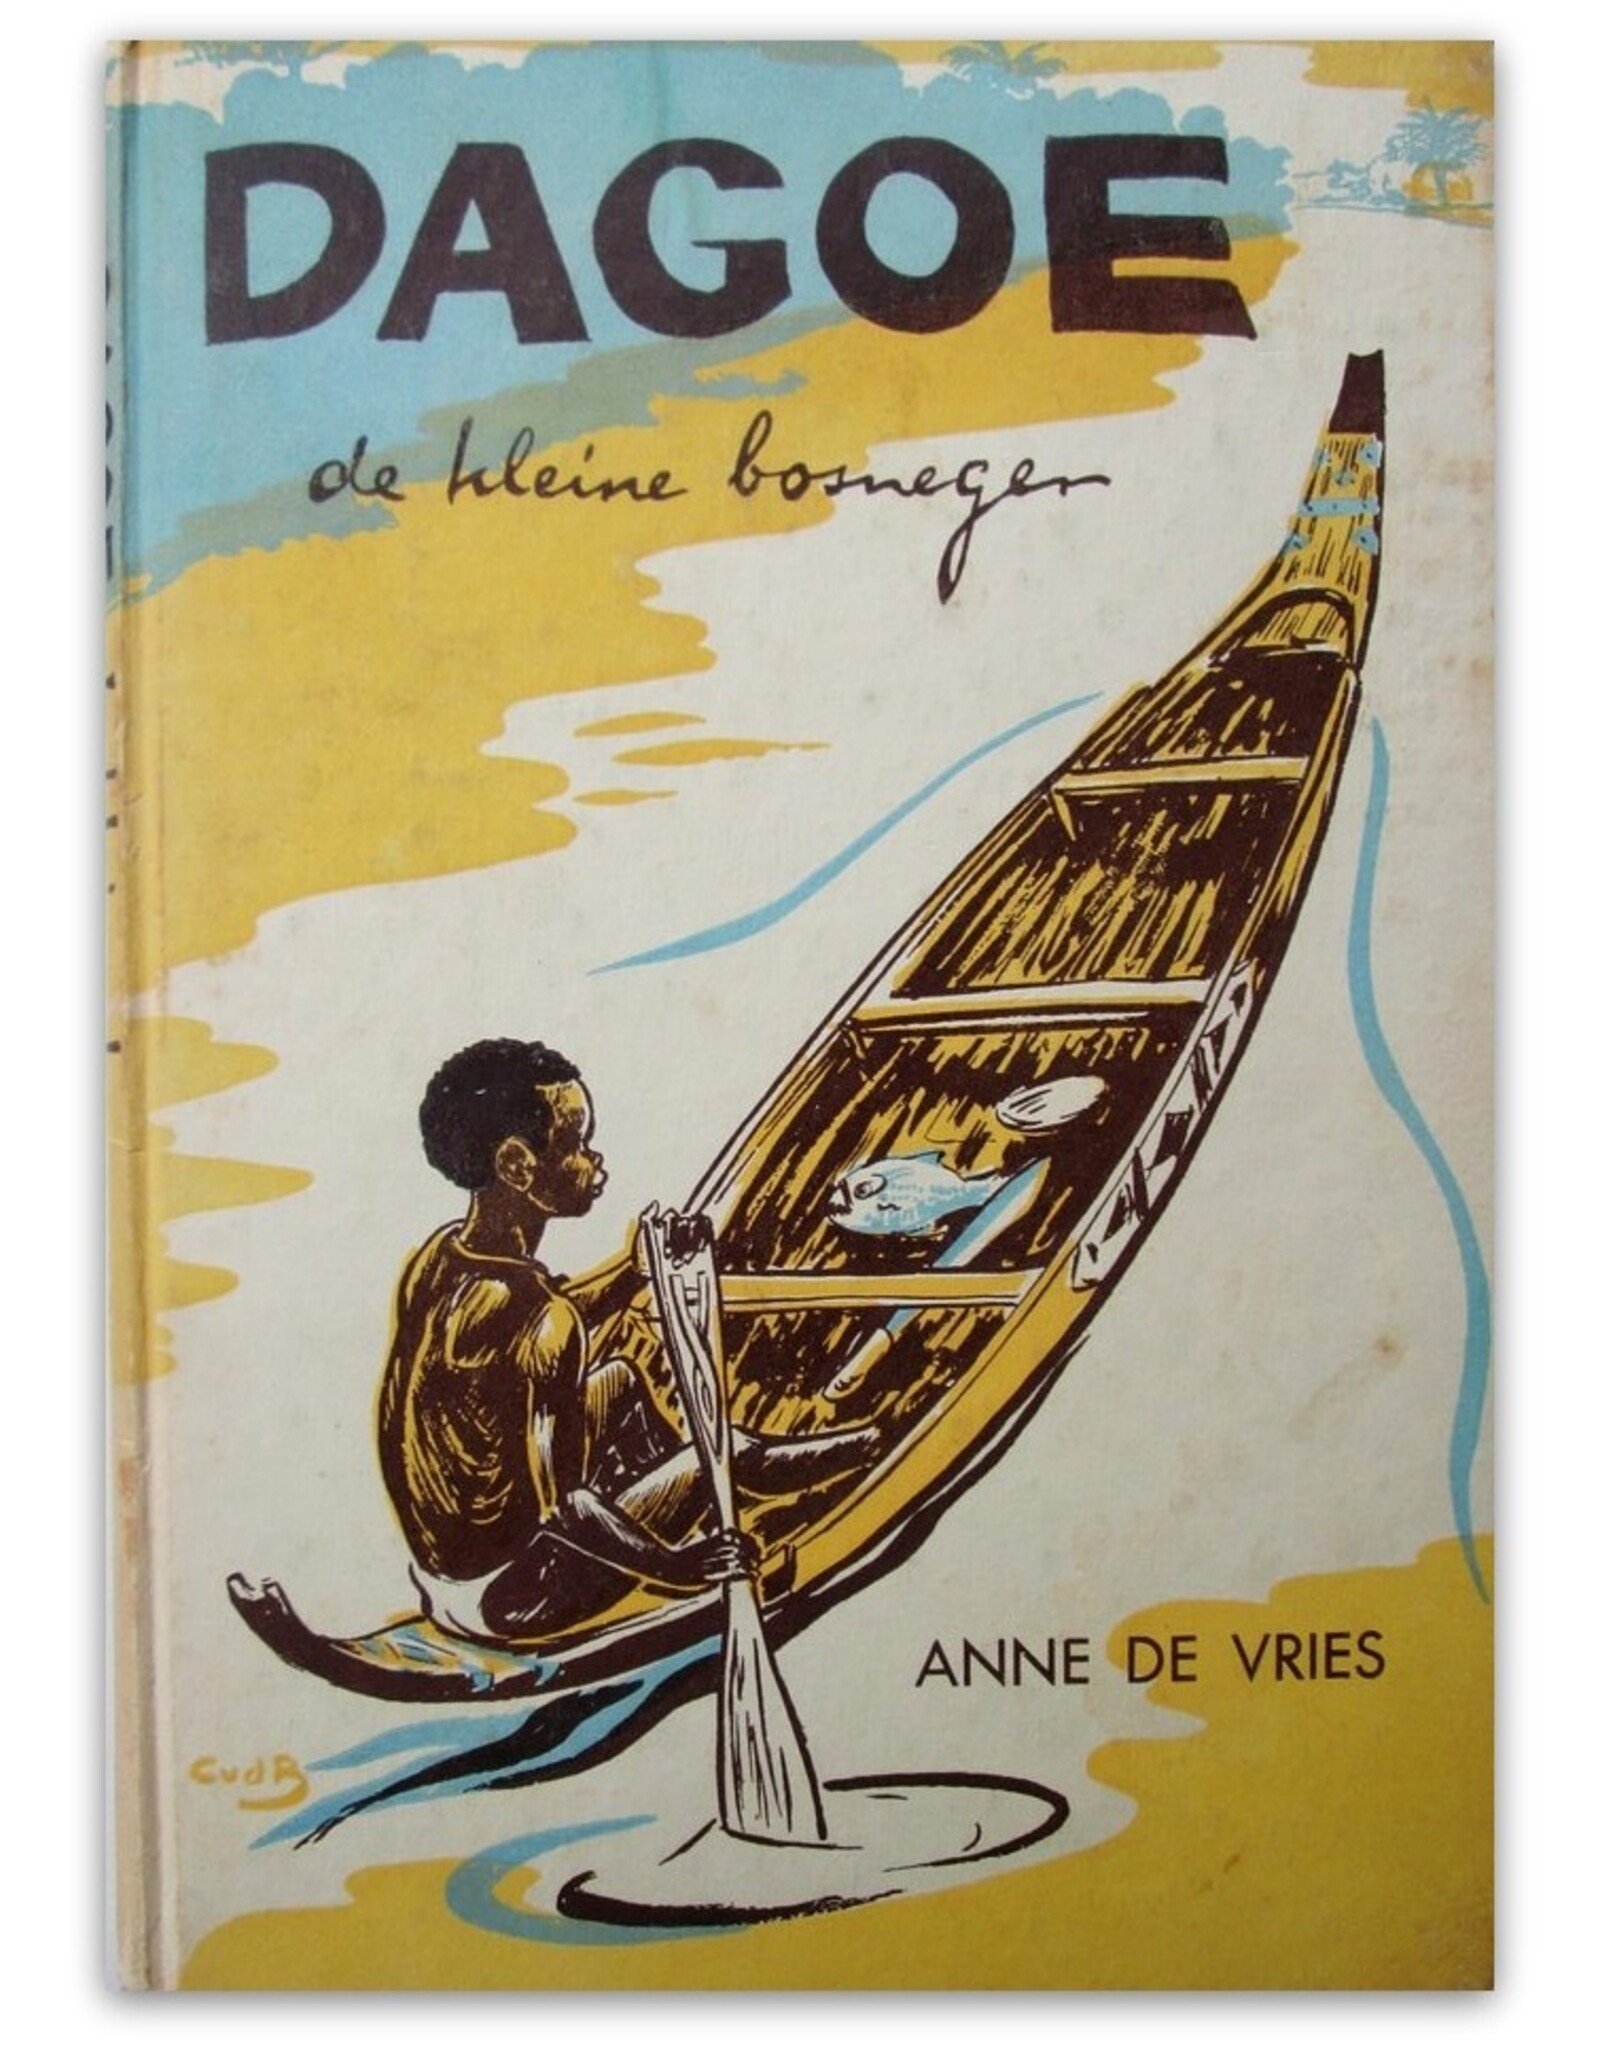 Anne de Vries - Dagoe de kleine bosneger. Tweede druk